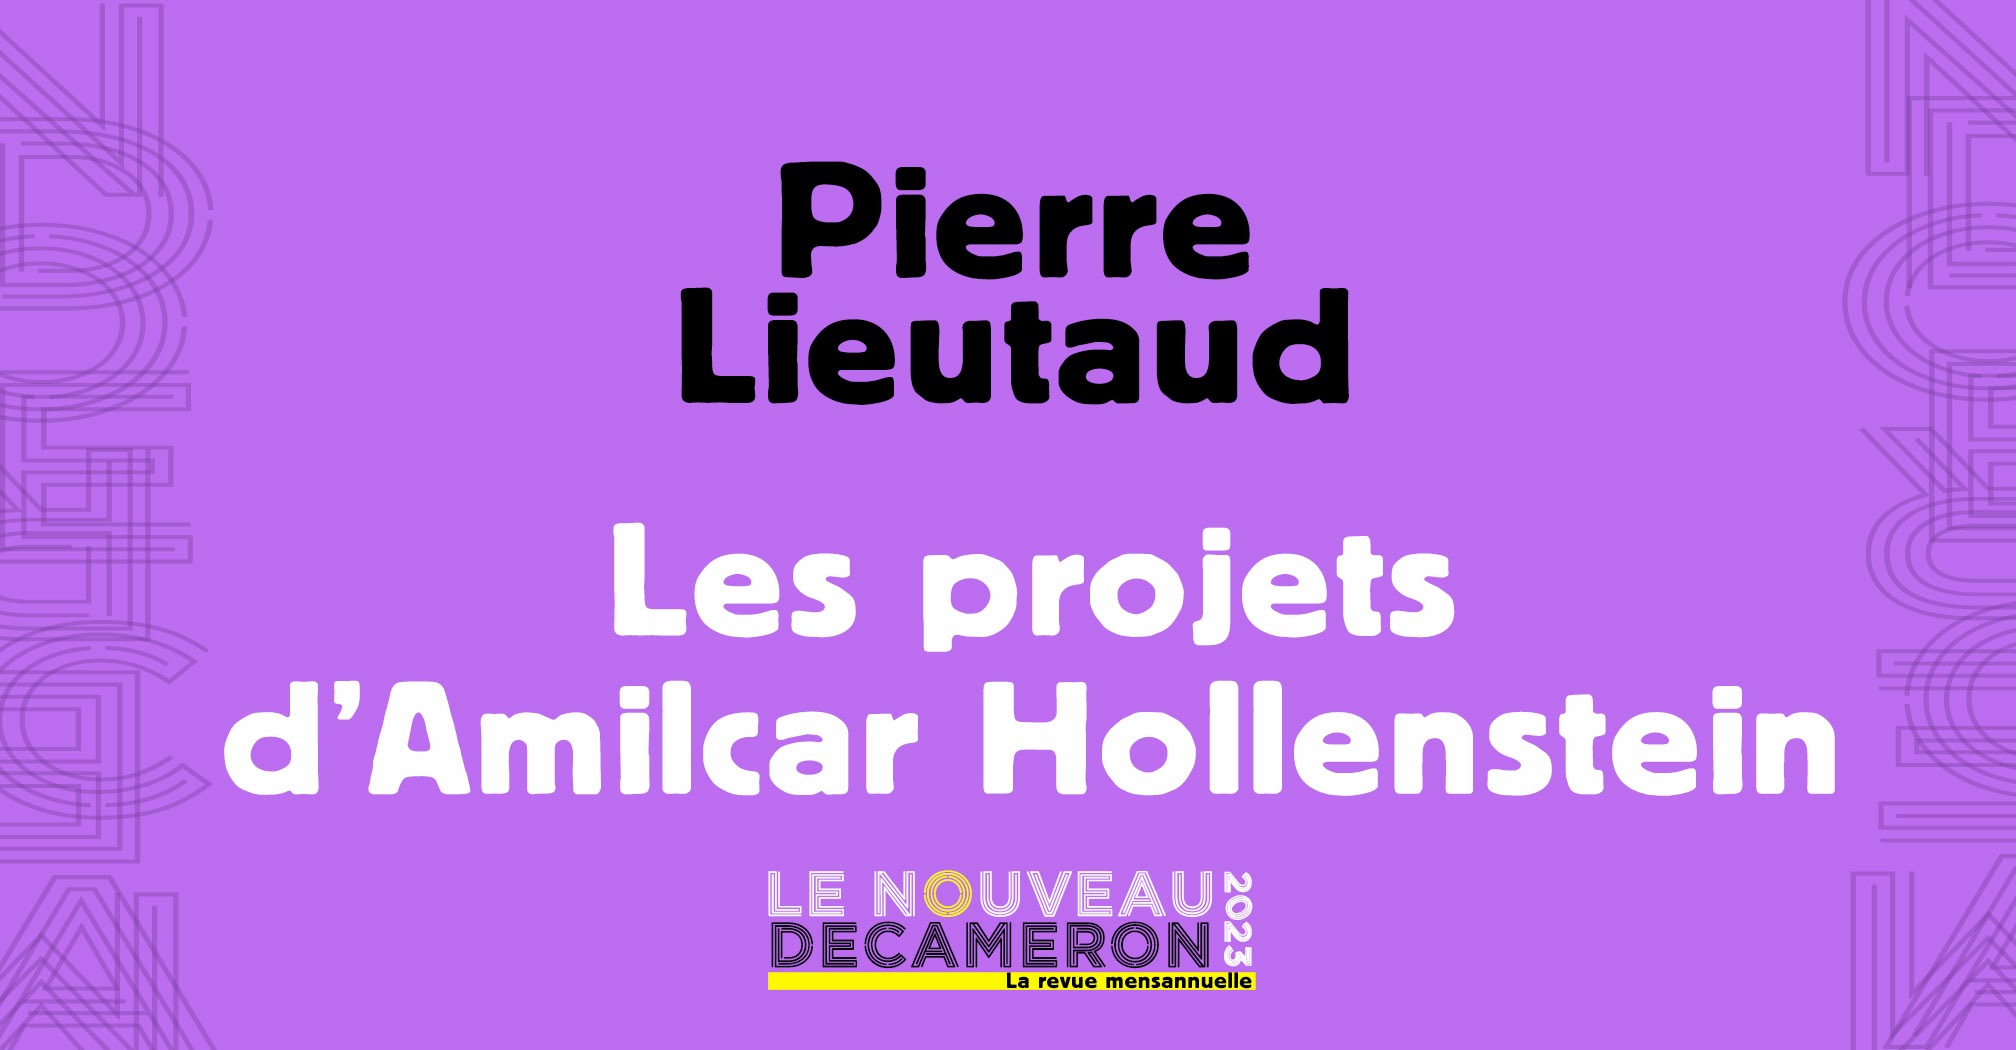 Pierre Lieutaud -  Les projets d’Amilcar Hollenstein